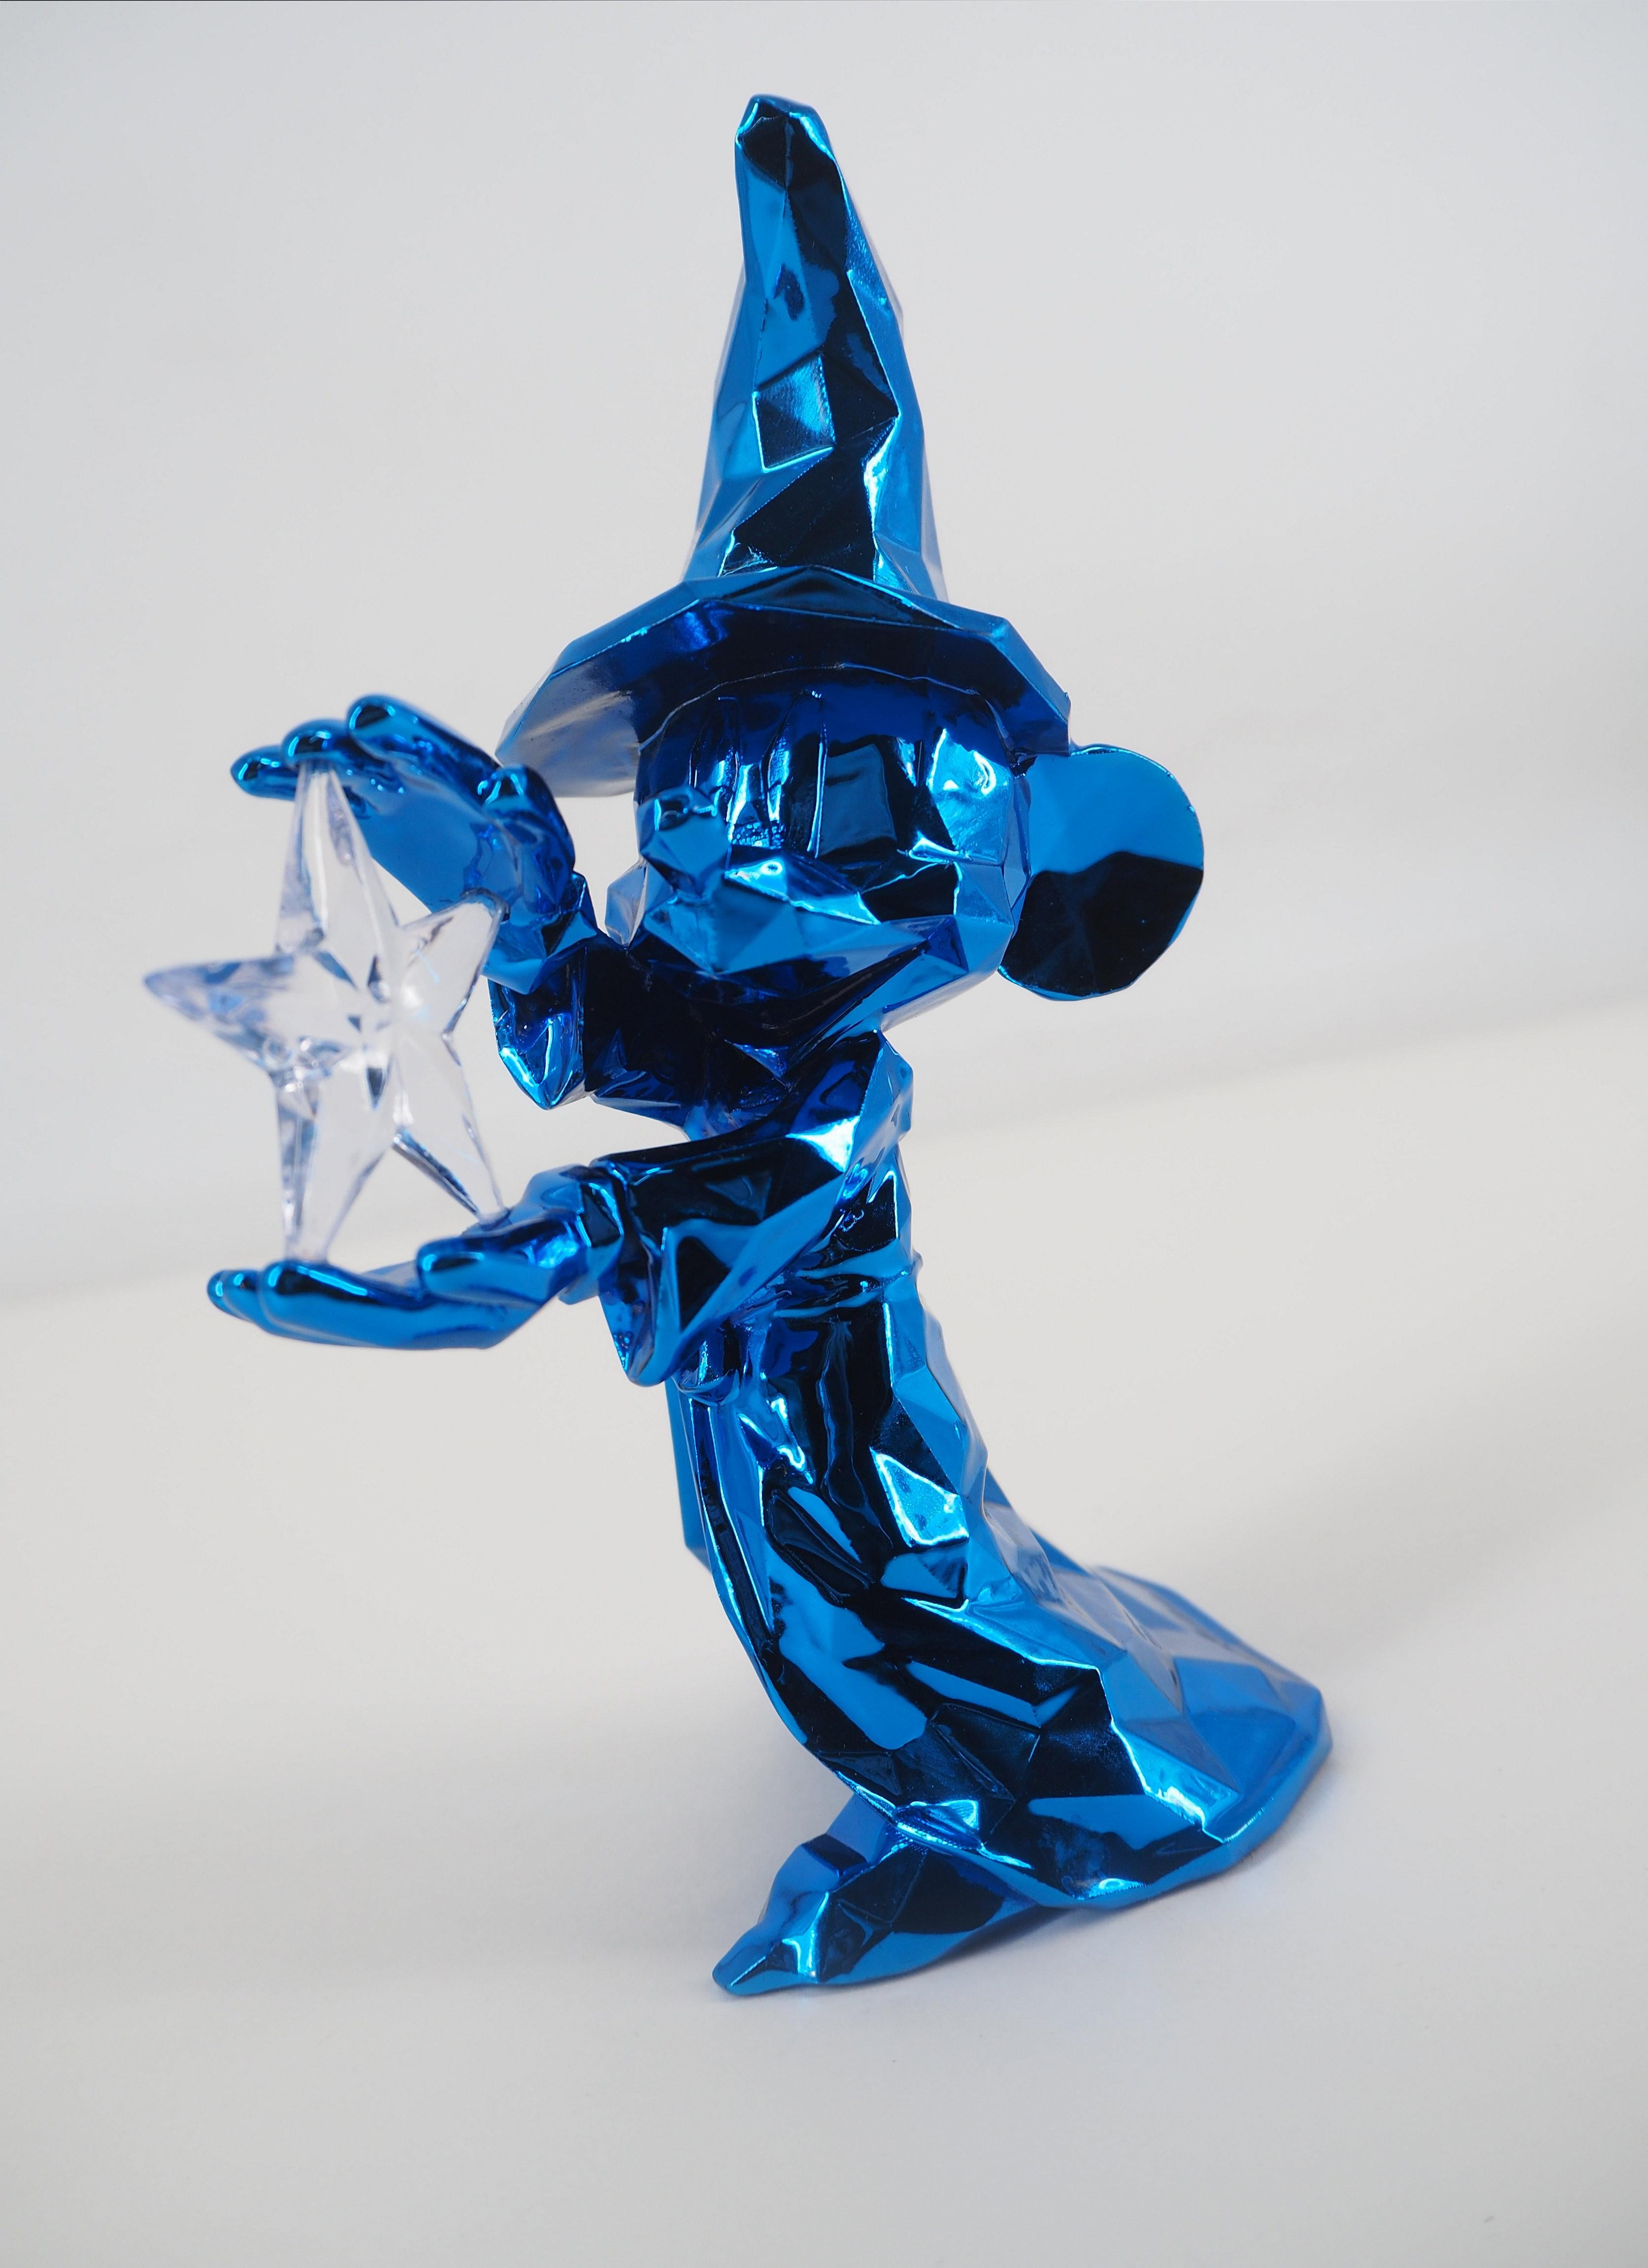 Richard ORLINSKI x Disneyland Paris 
Mickey Spirit 

Sculpture in resin
Metallic silver
About 17 x 13 x 8 cm (c. 6 x 5.1 x 3.1 in)

Excellent condition